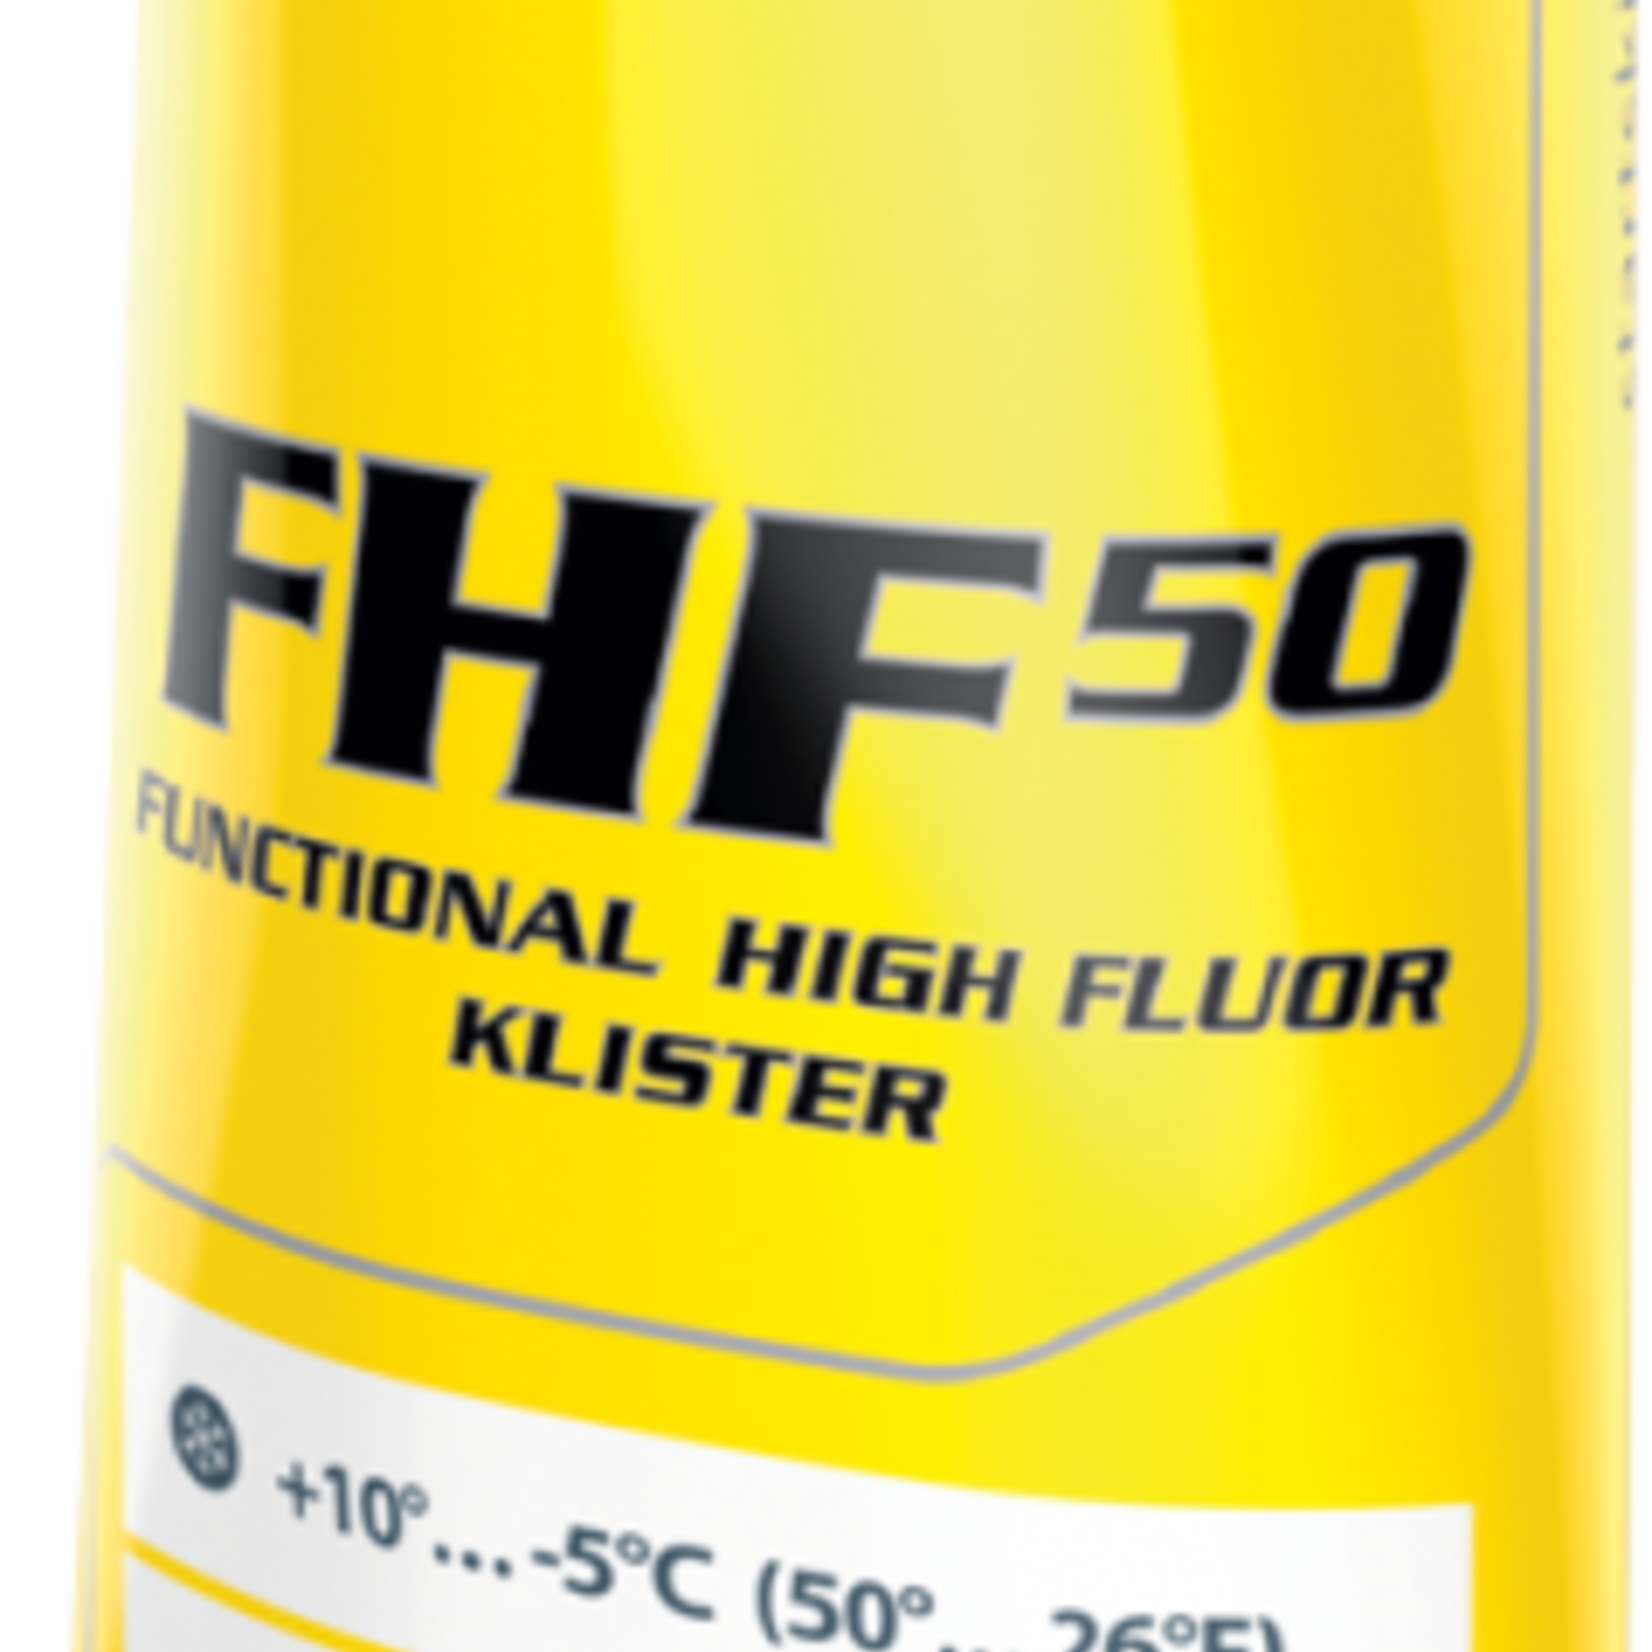 Start Start FHF (Functional High Fluoro) Klister